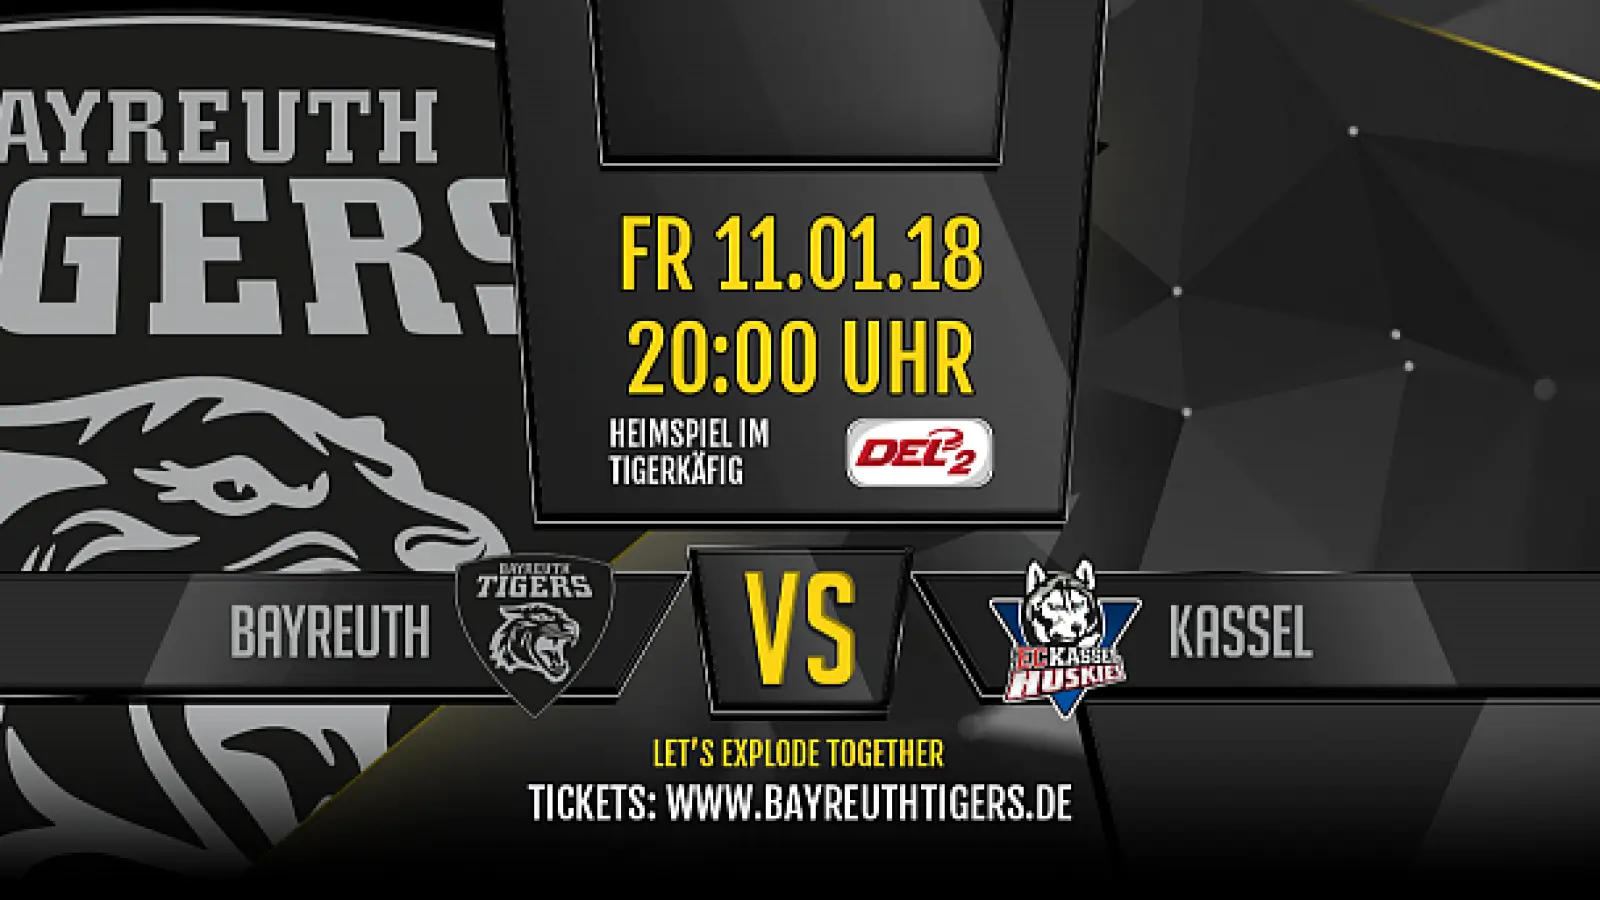 Die Bayreuth Tigers sind gegen Kassel gefordert. / Foto: Bayreuth Tigers Eishockey GmbH (Foto: inBayreuth.de)